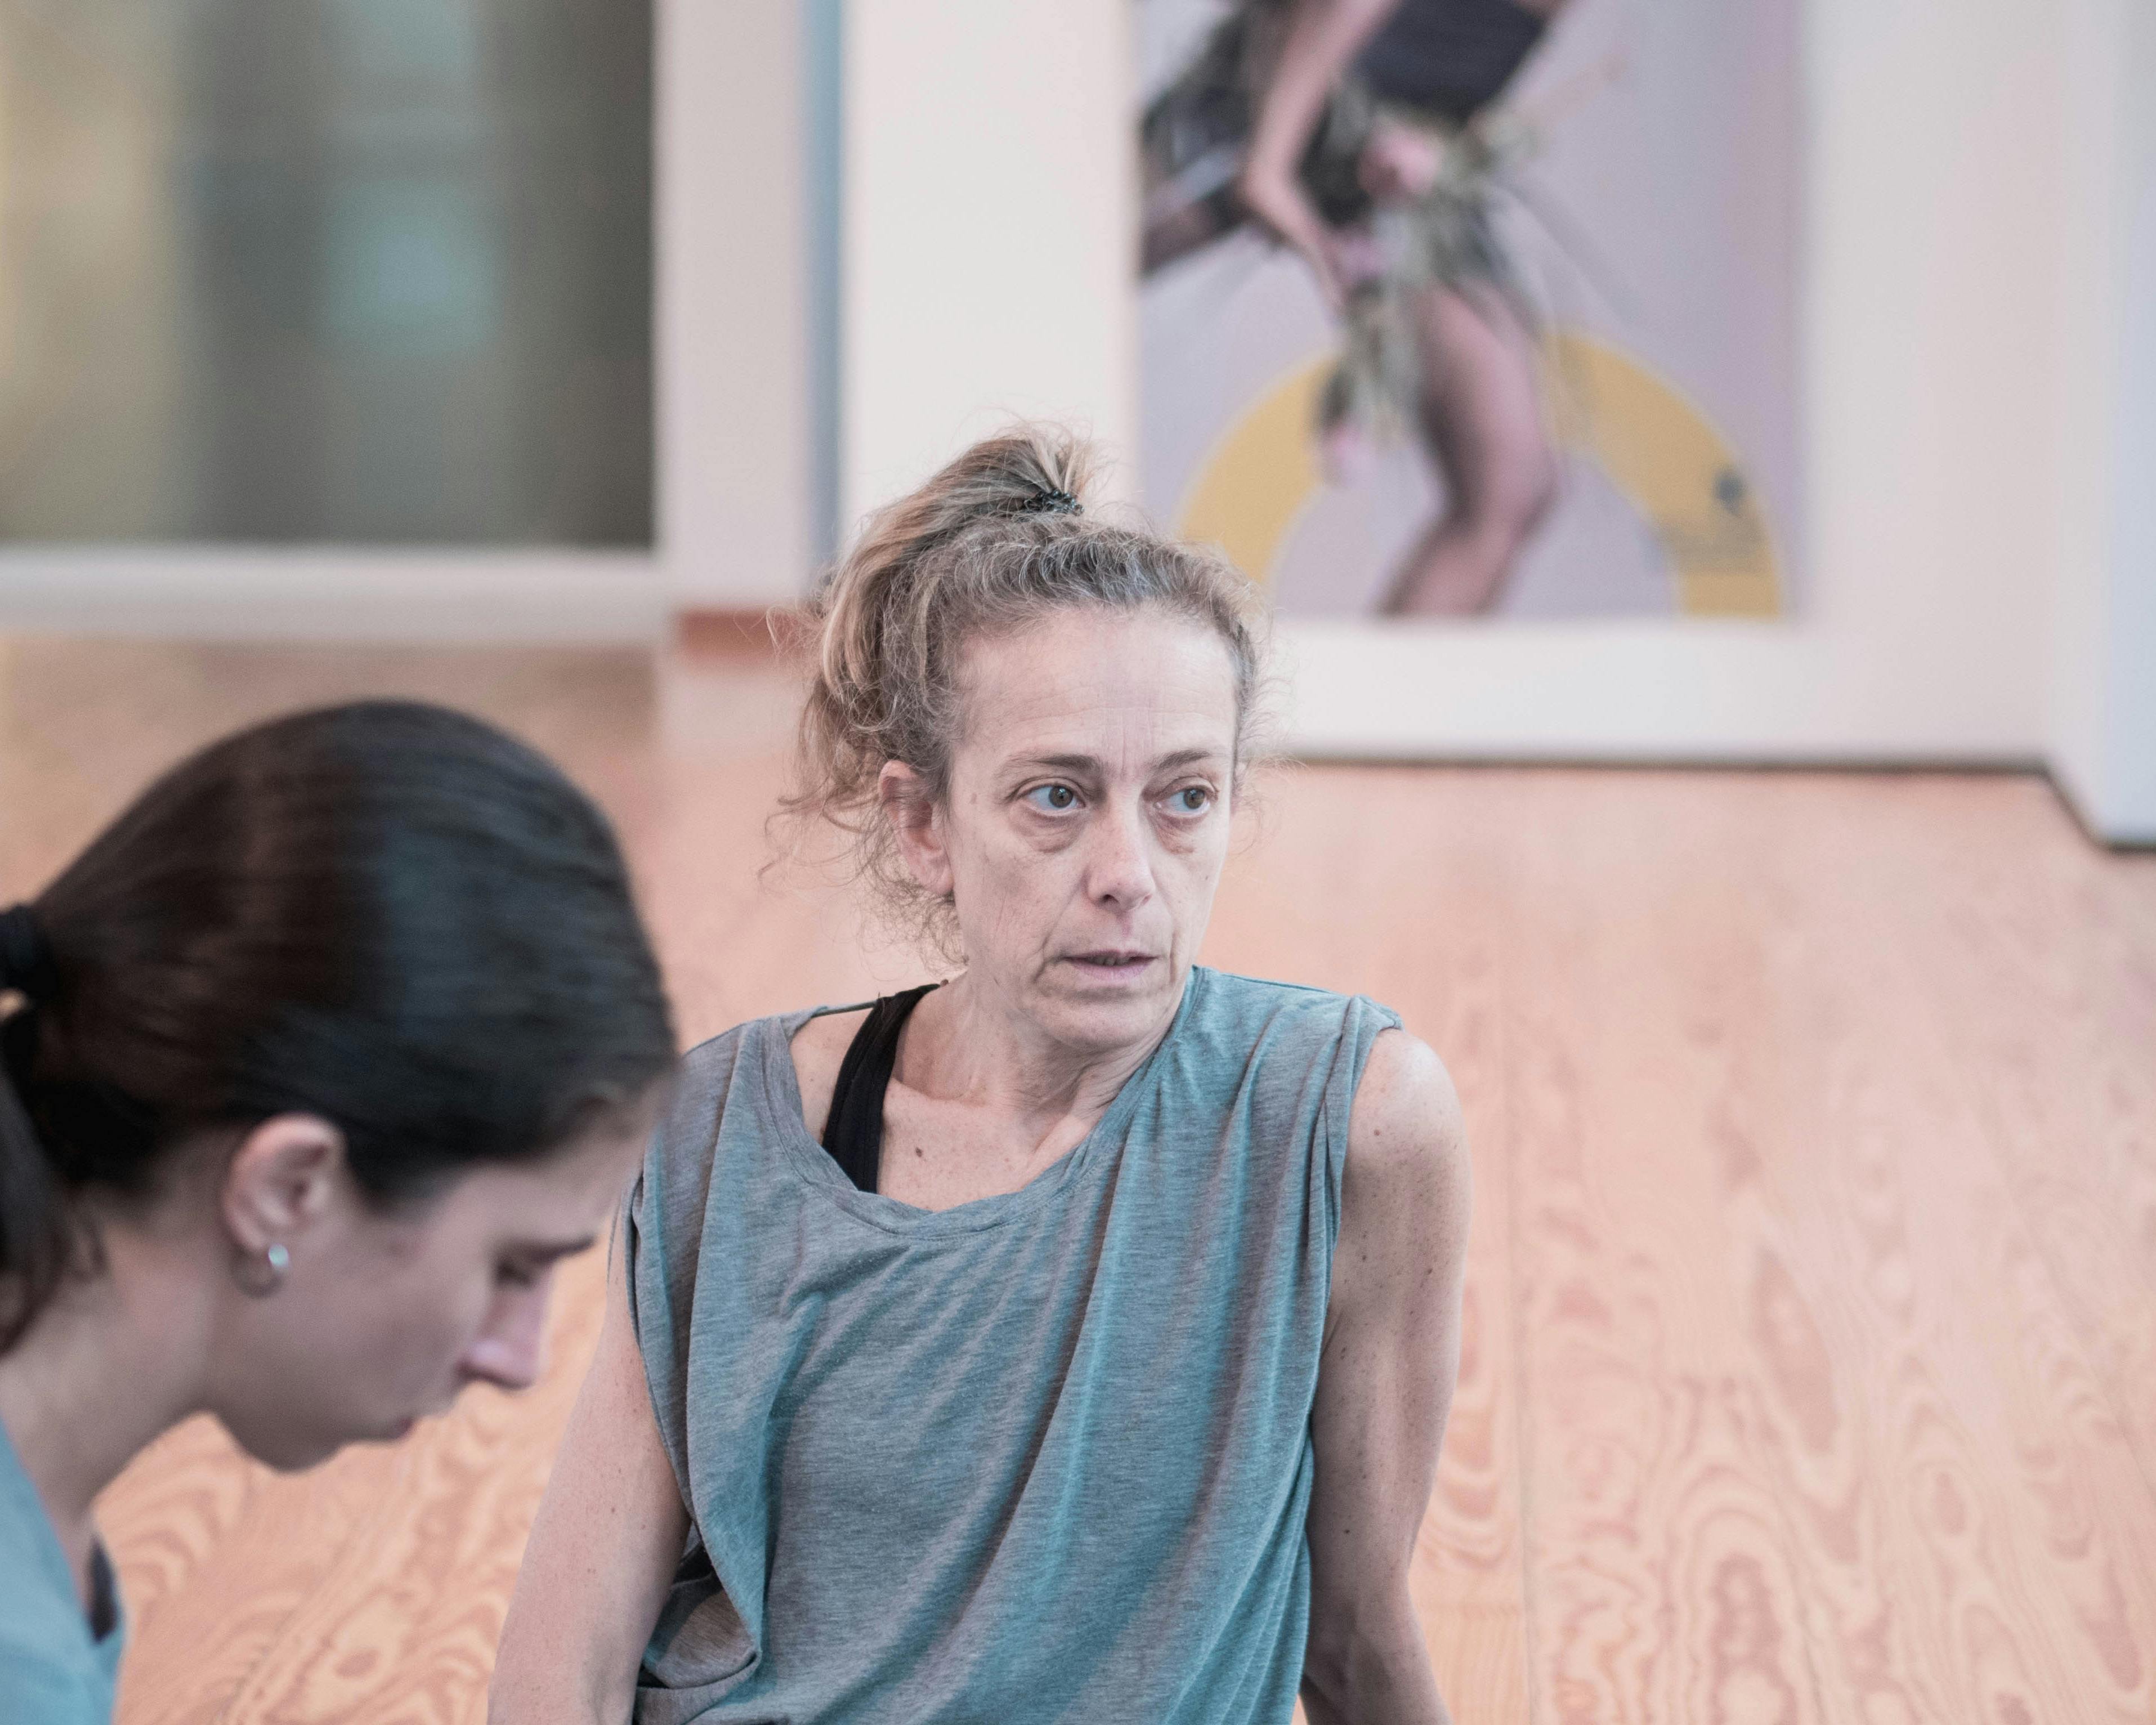 La coreografa Cristina Kristal Rizzo al lavoro nello Studio e parla con i danzatori. Accanto a lei una danzatrice ascolta.